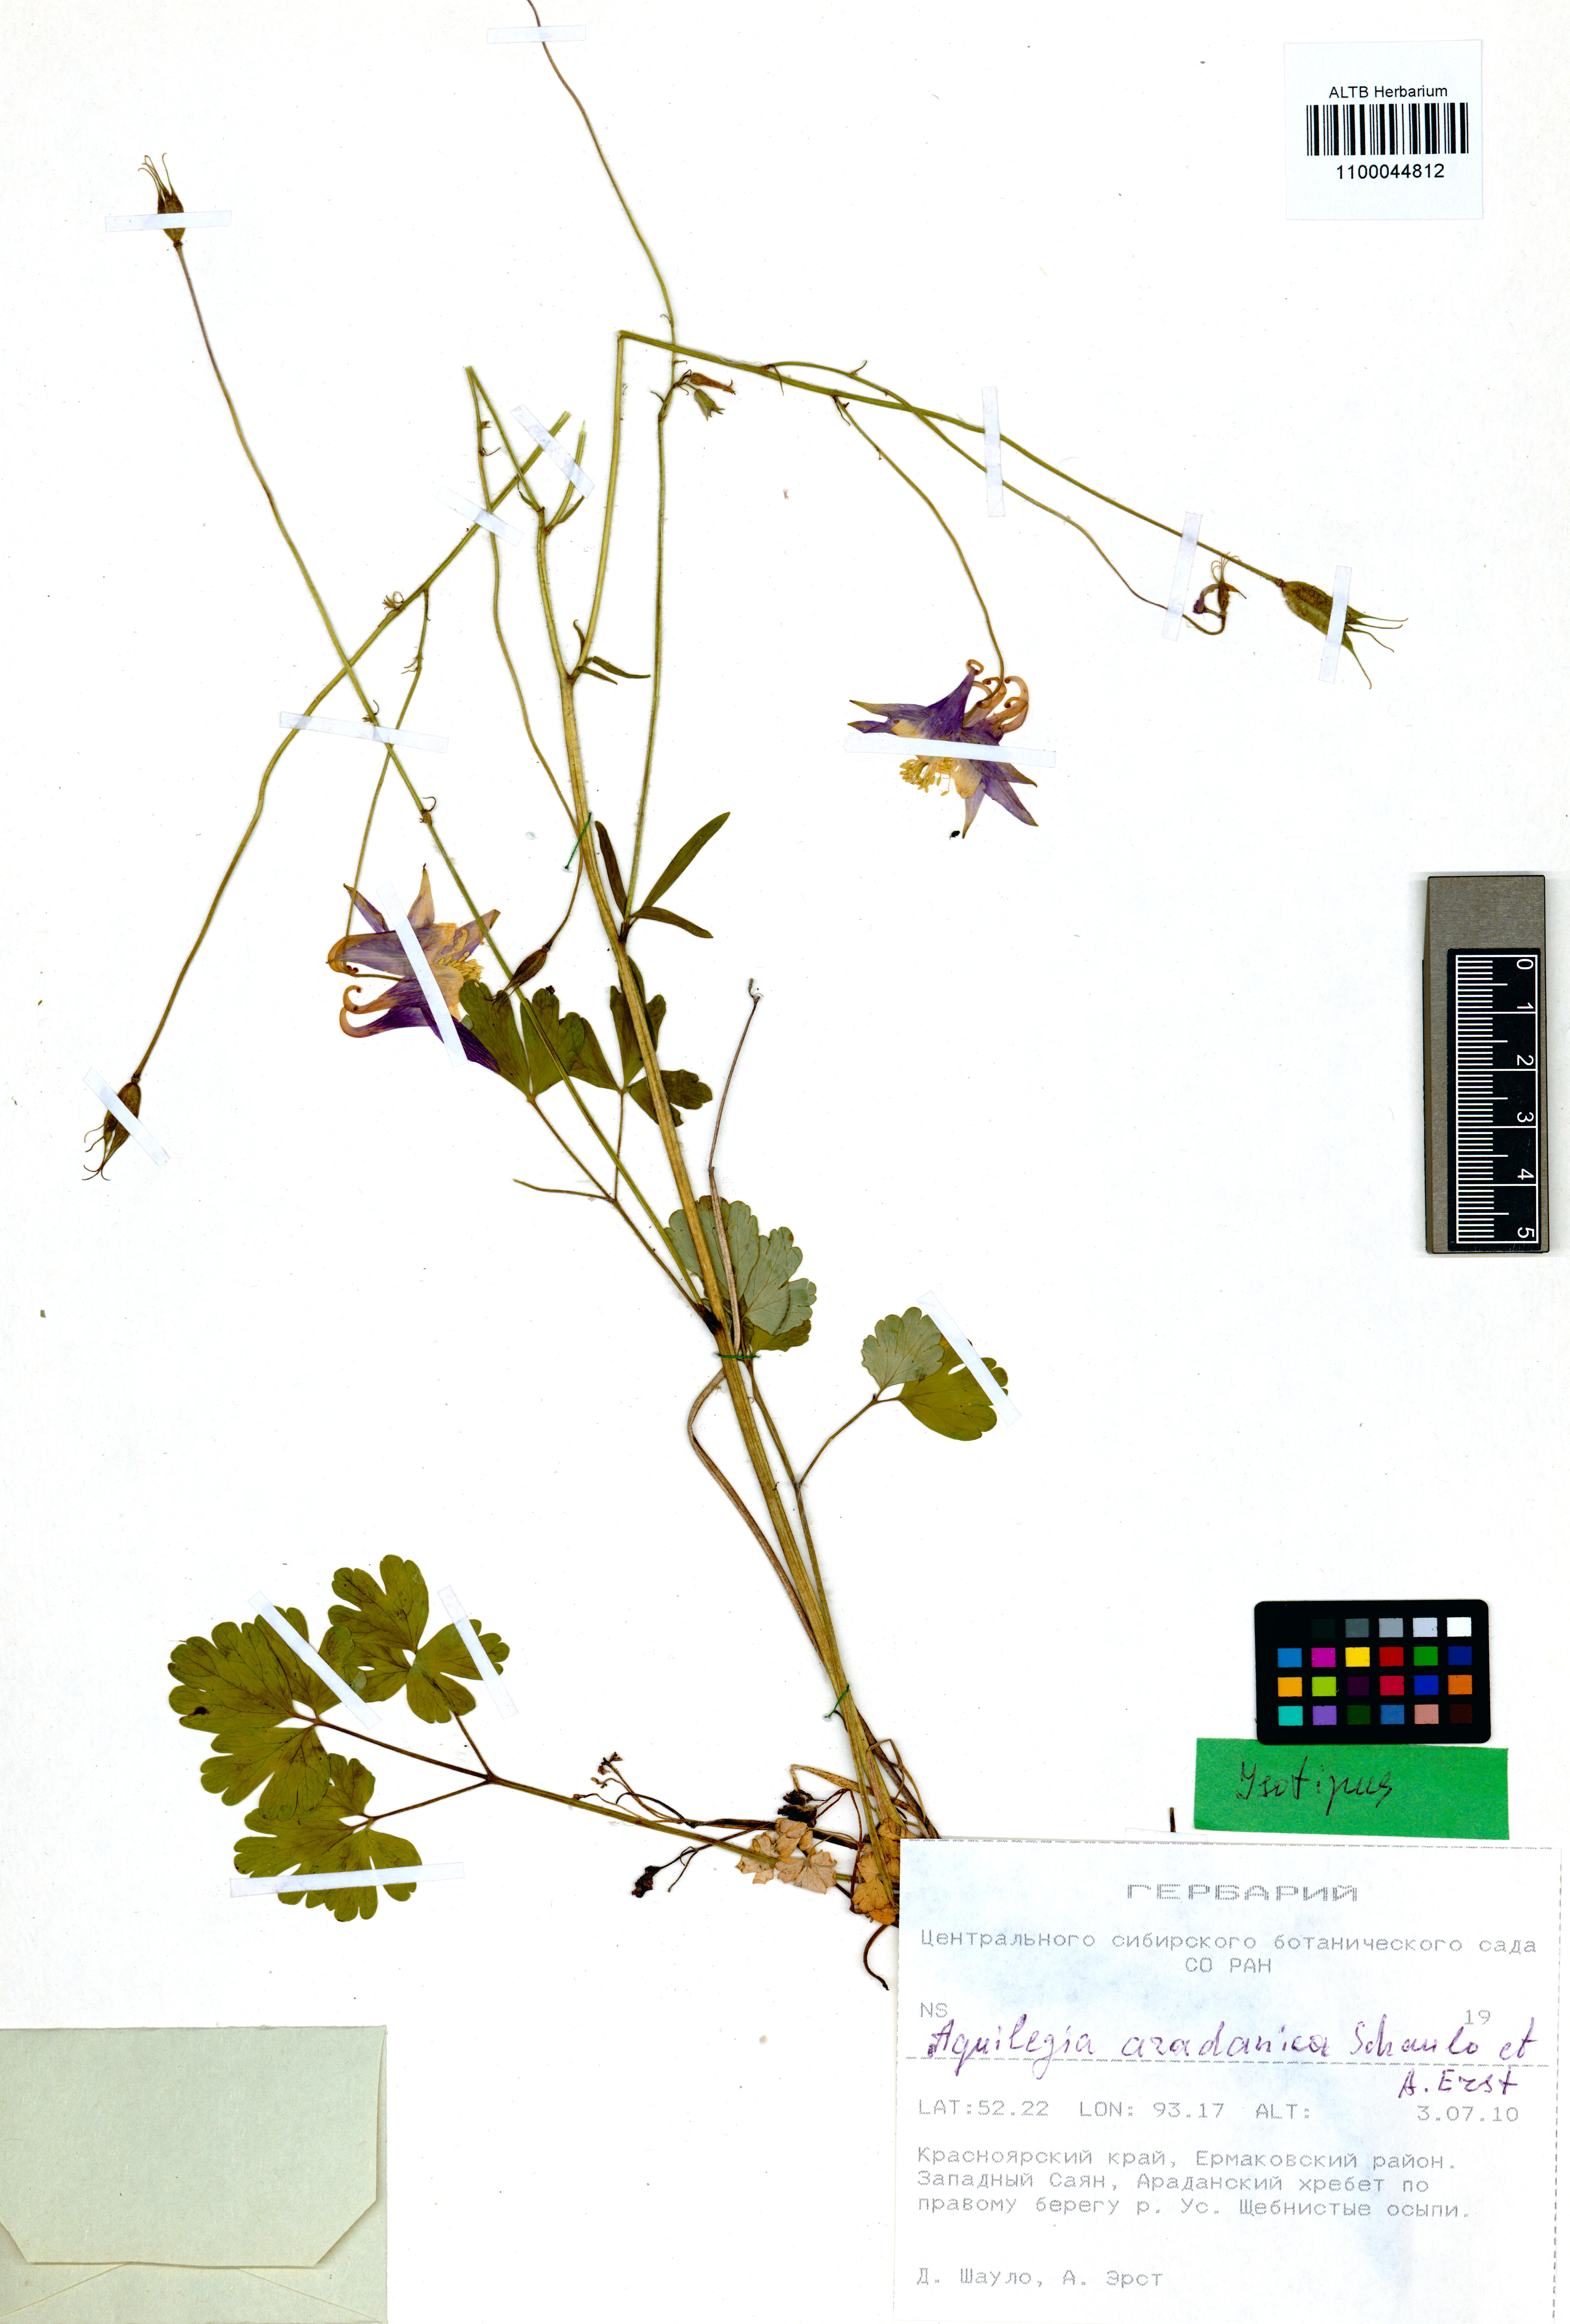 Ranunculaceae,Aquilegia aradanica Shaulo, Erst